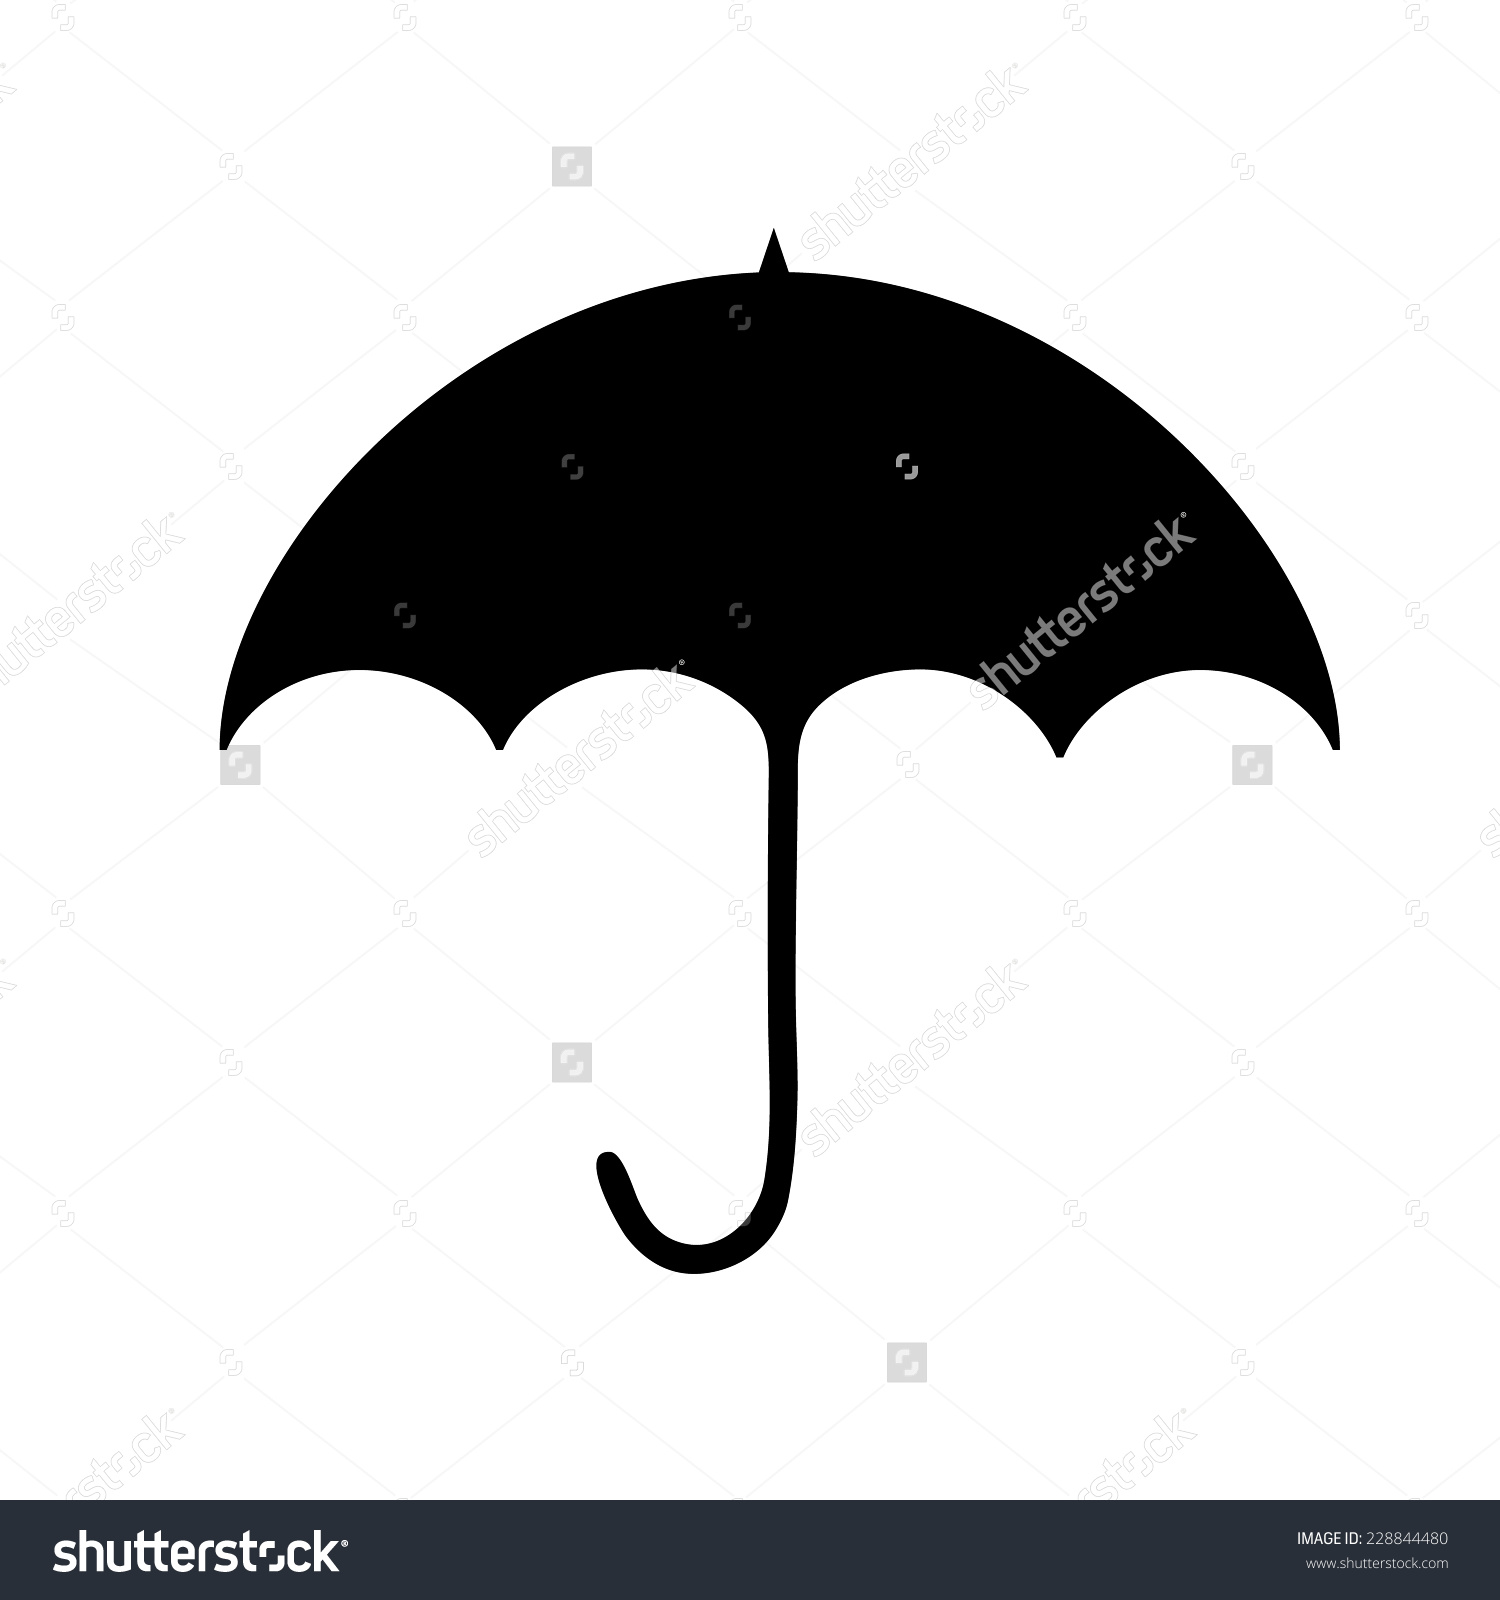 umbrella silhouette clip art - photo #39